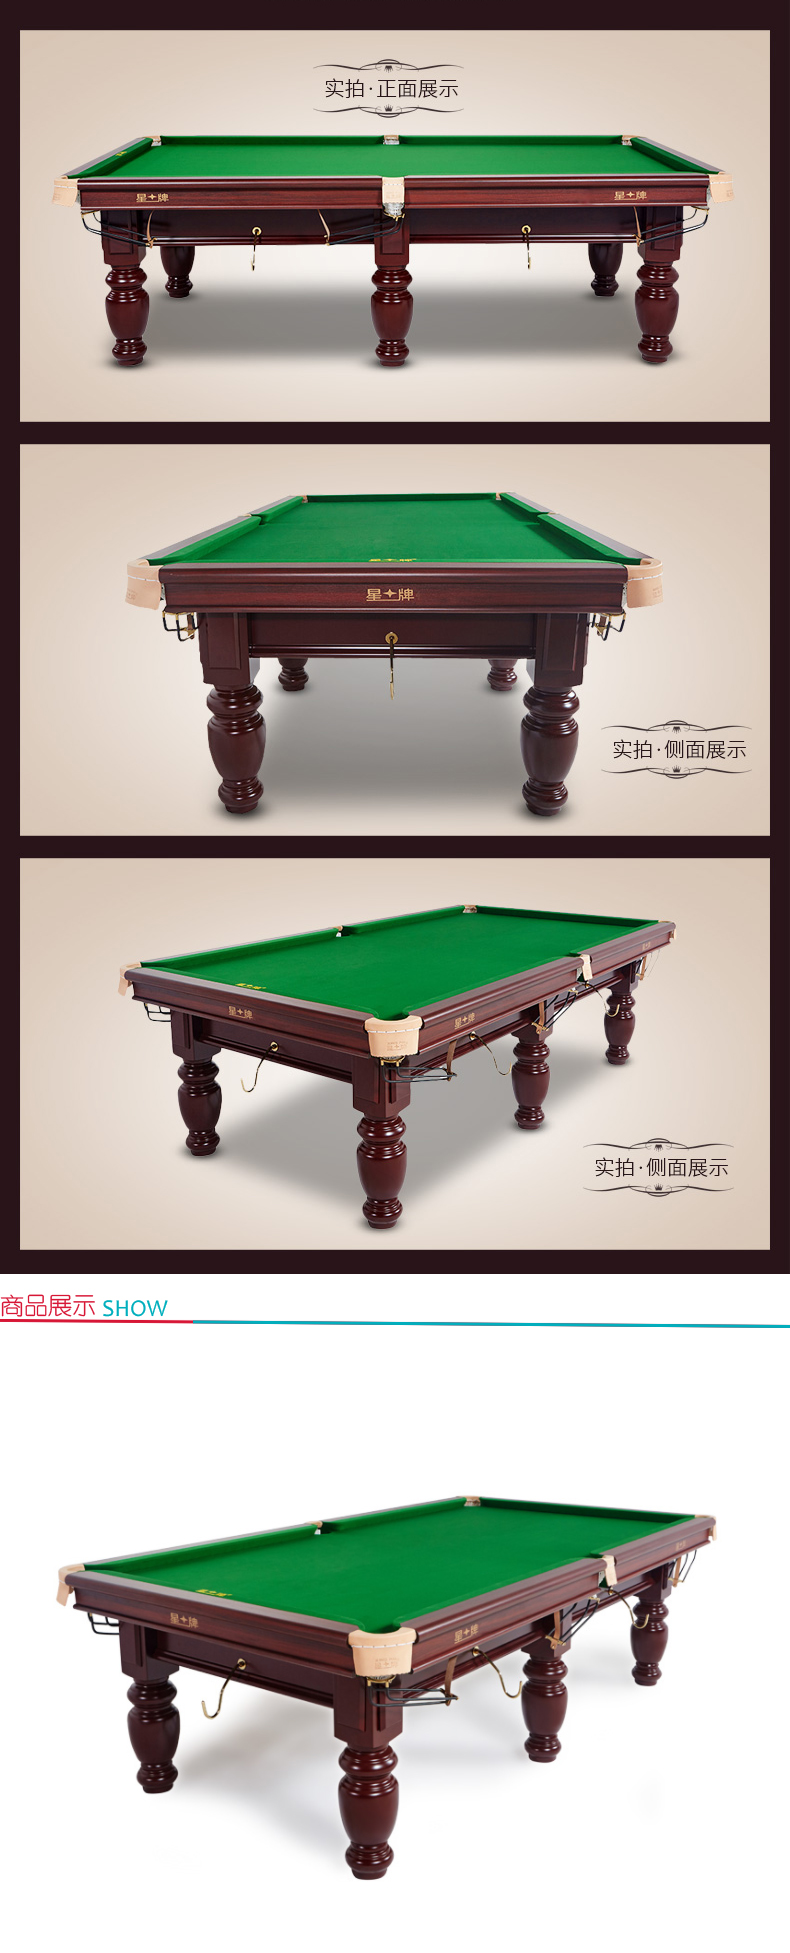 星牌 XING PAI 中式黑八钢库台球桌 XW119-9A 2.83*1.55m 